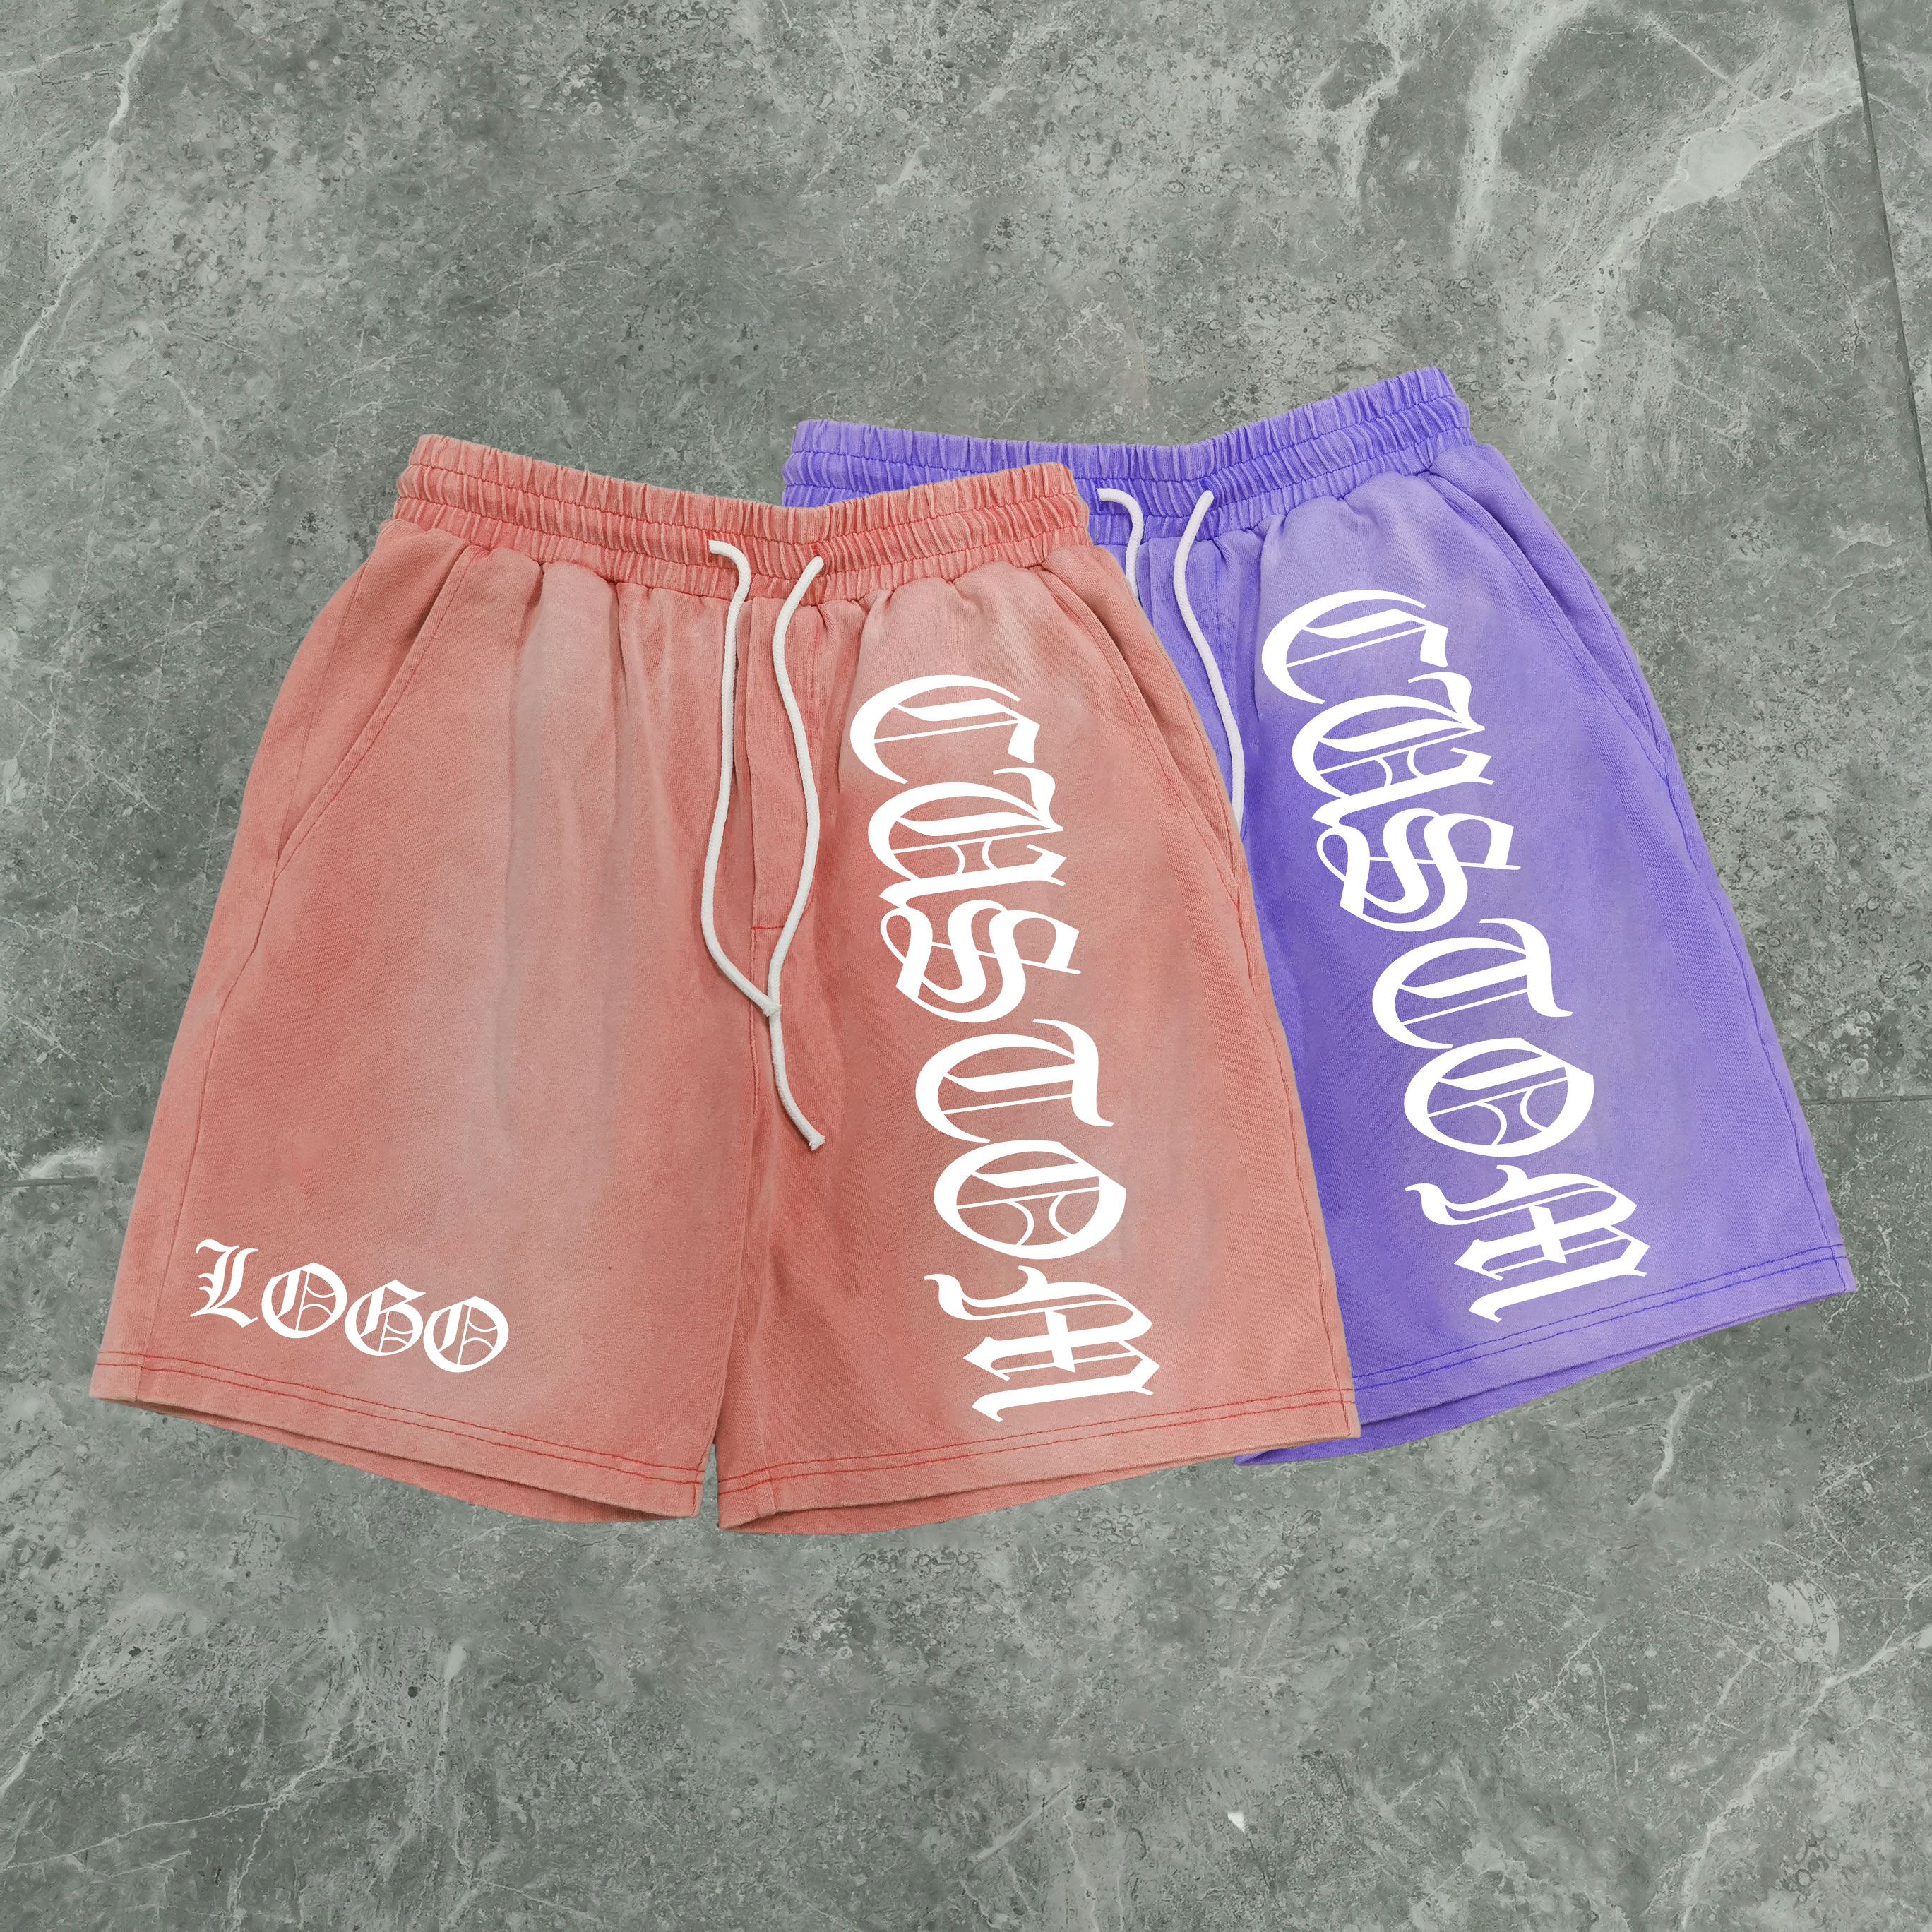 fabrica shorts casual in cotone lavatu à l'acidità di alta qualità